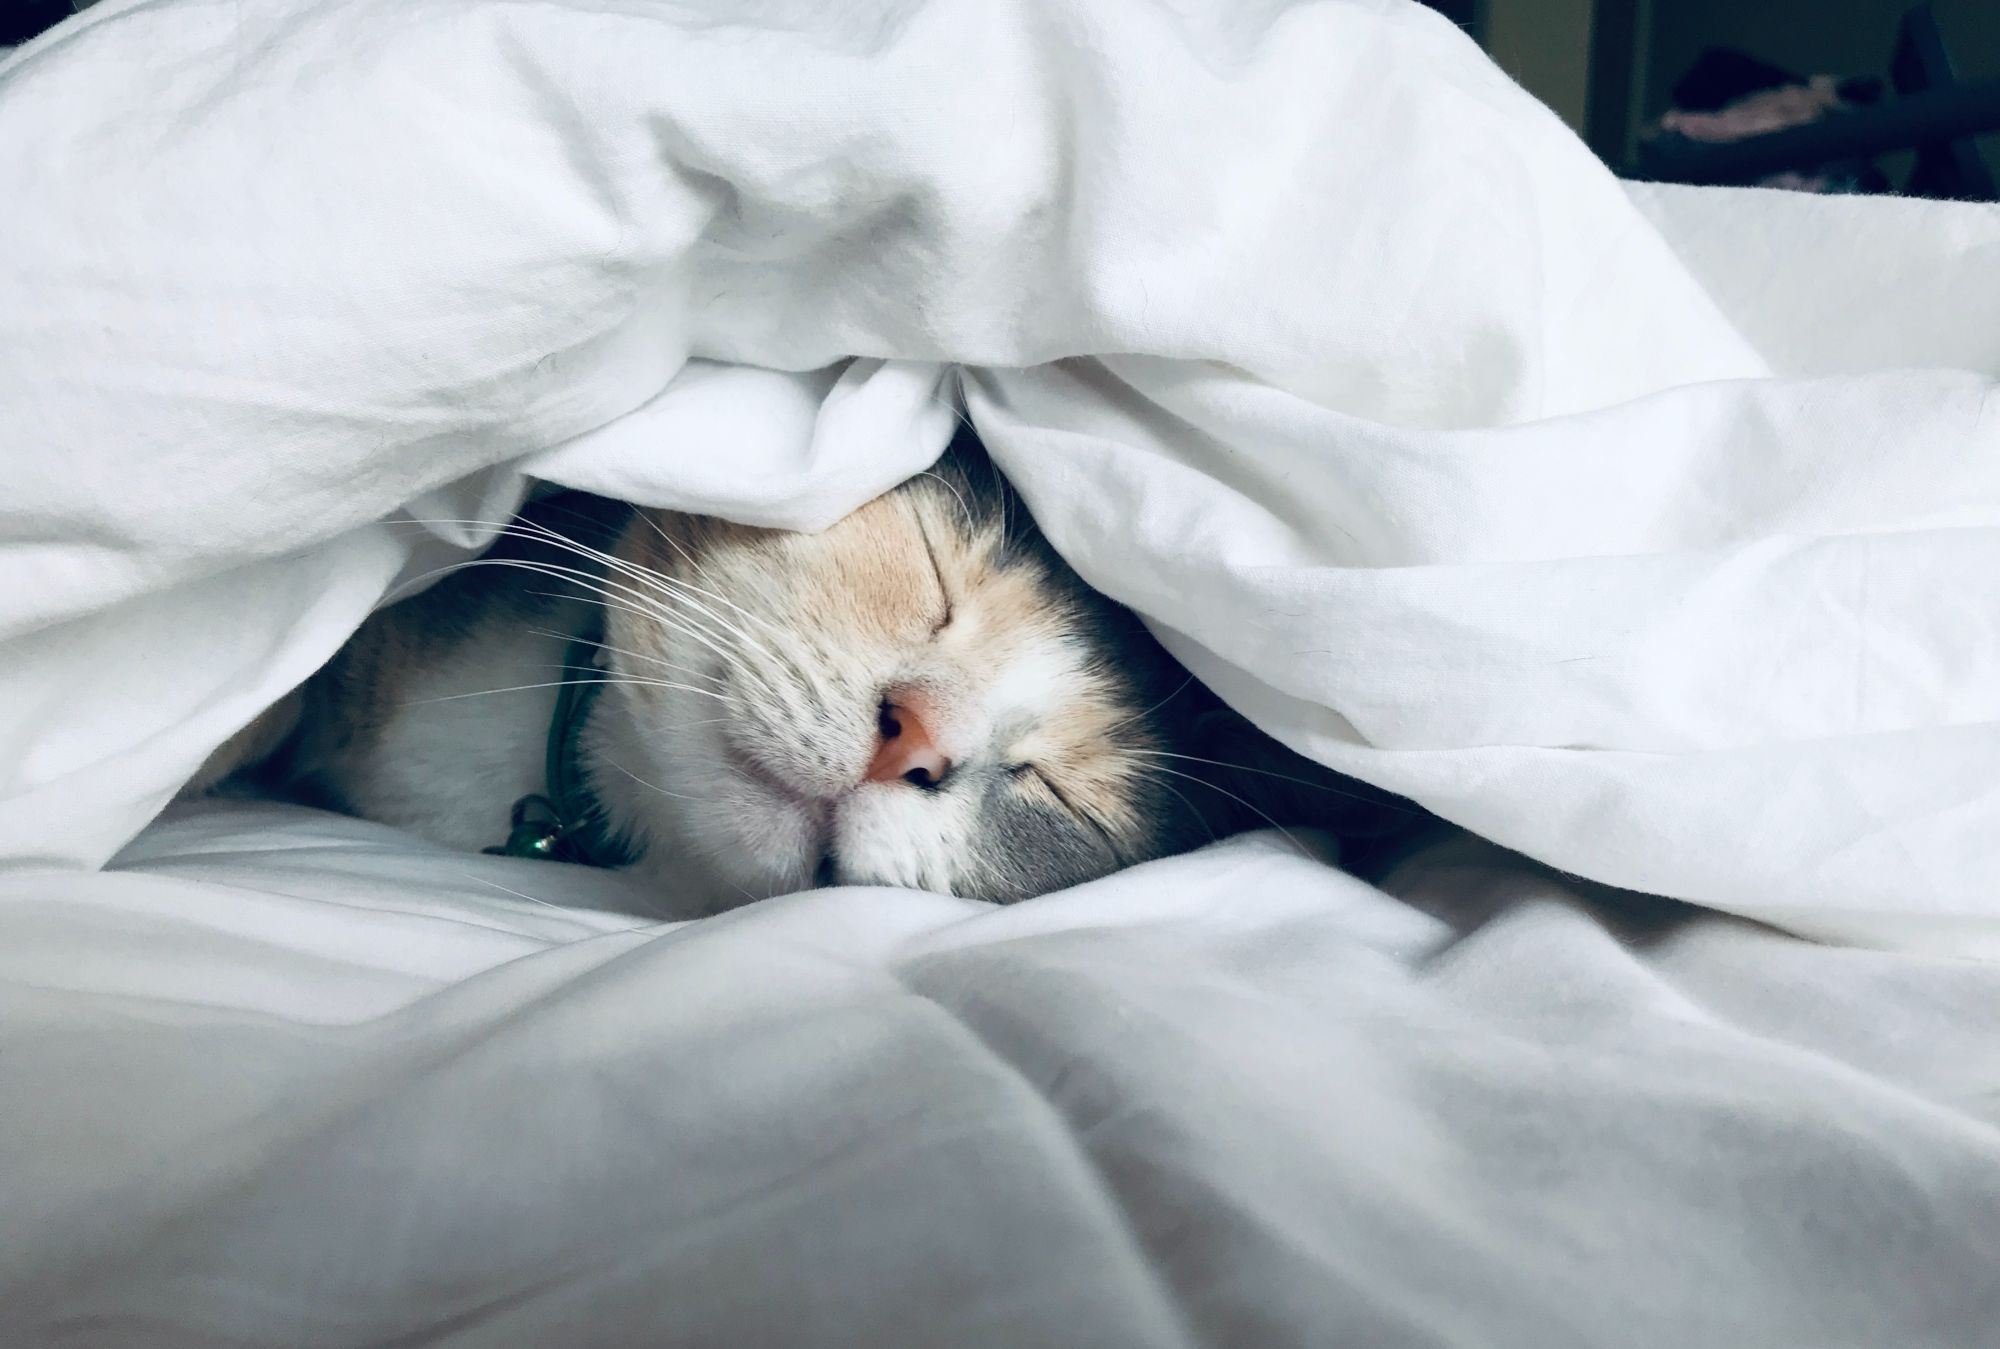 Cat sleeping underneath blanket